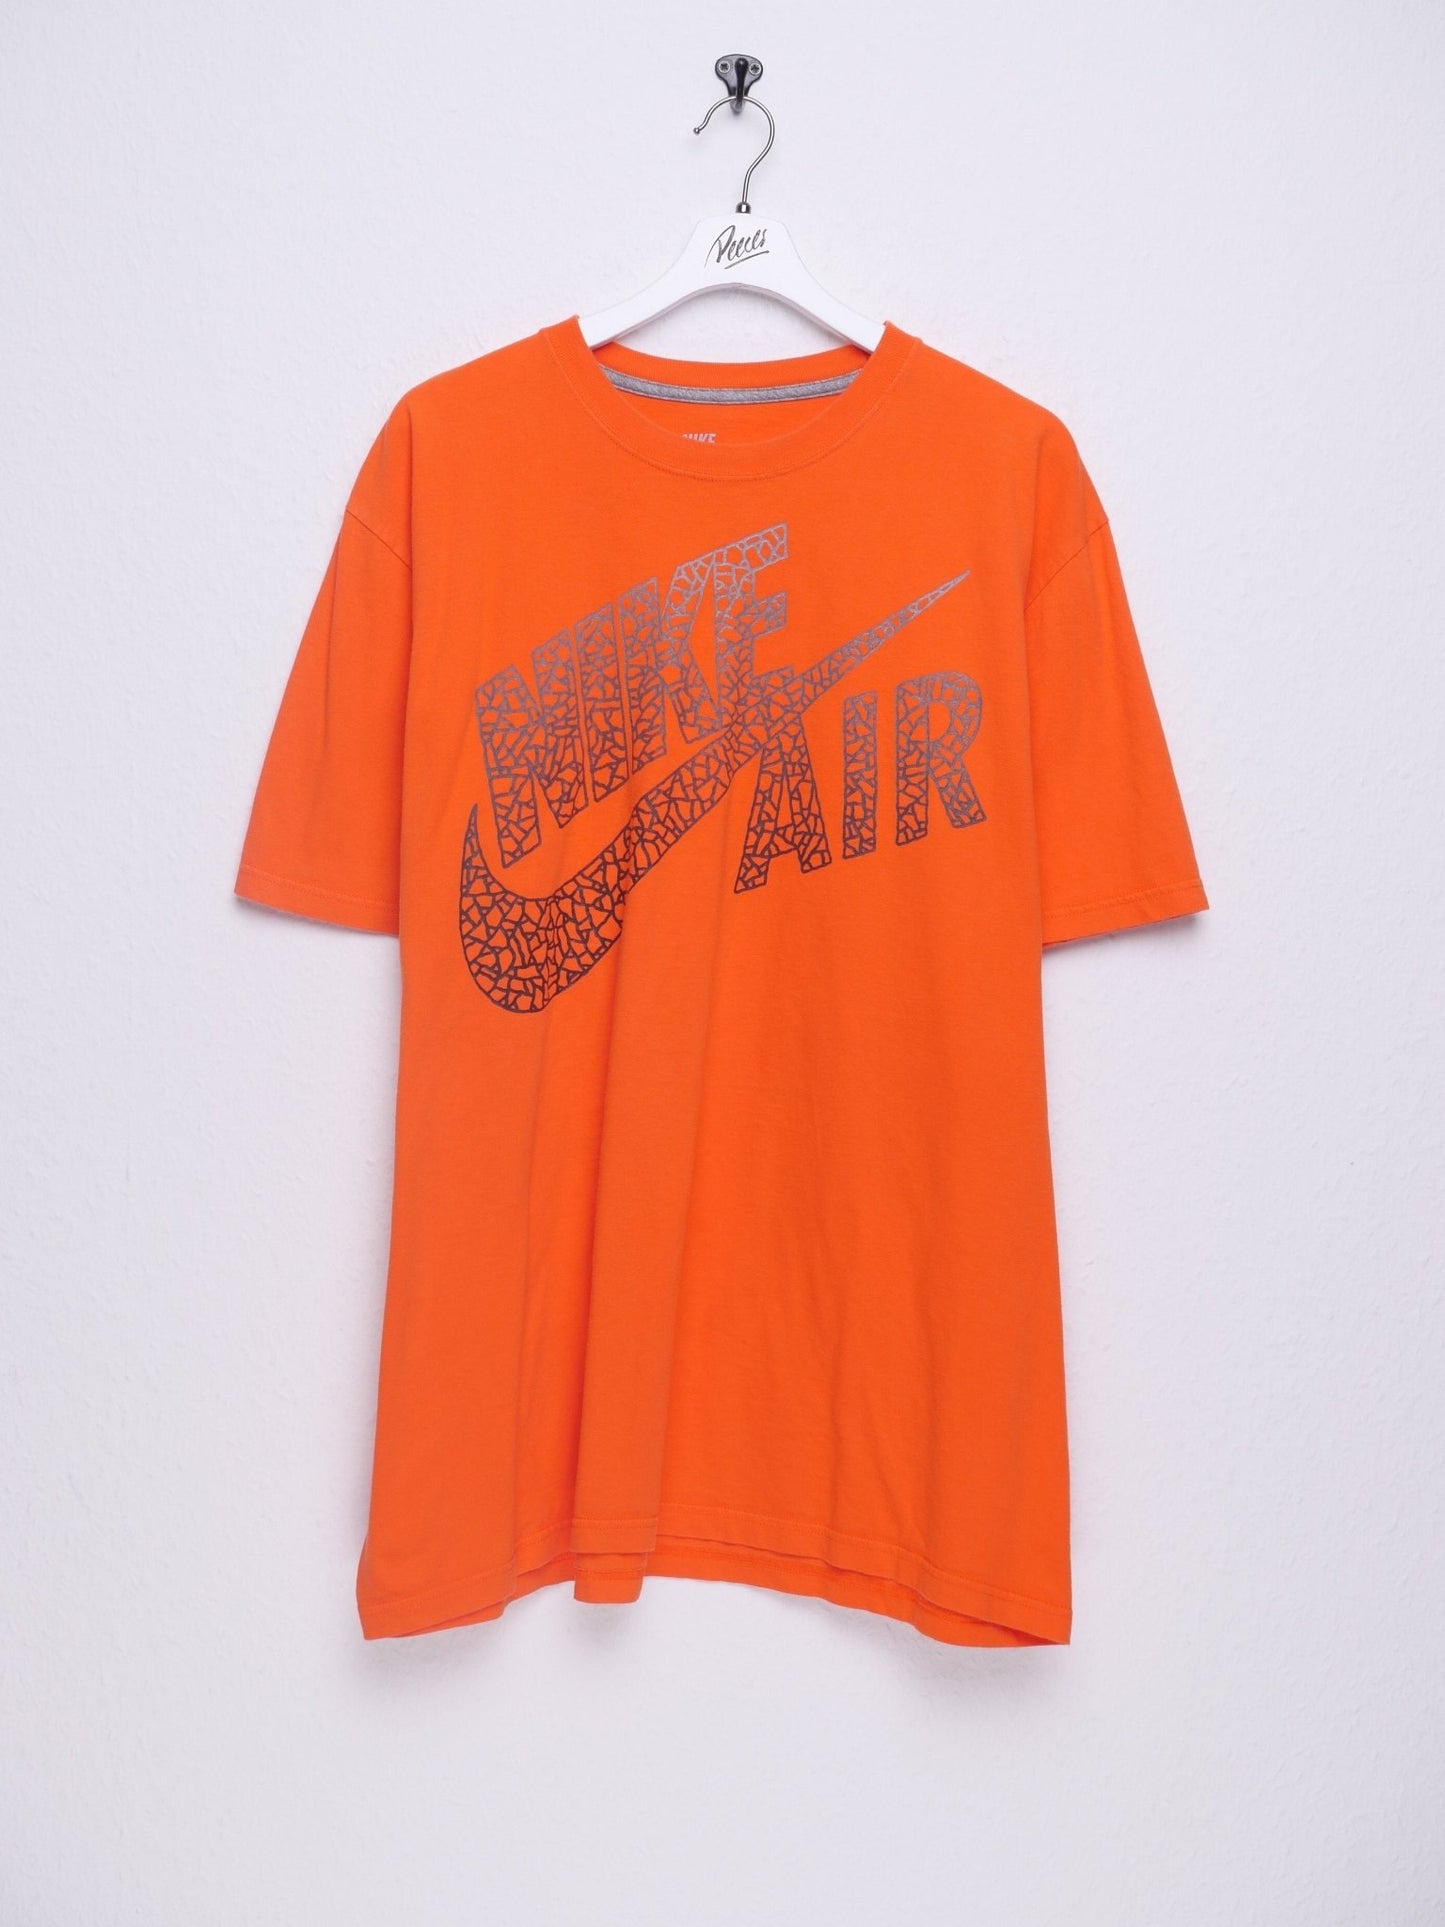 nike Air printed Logo orange Shirt - Peeces